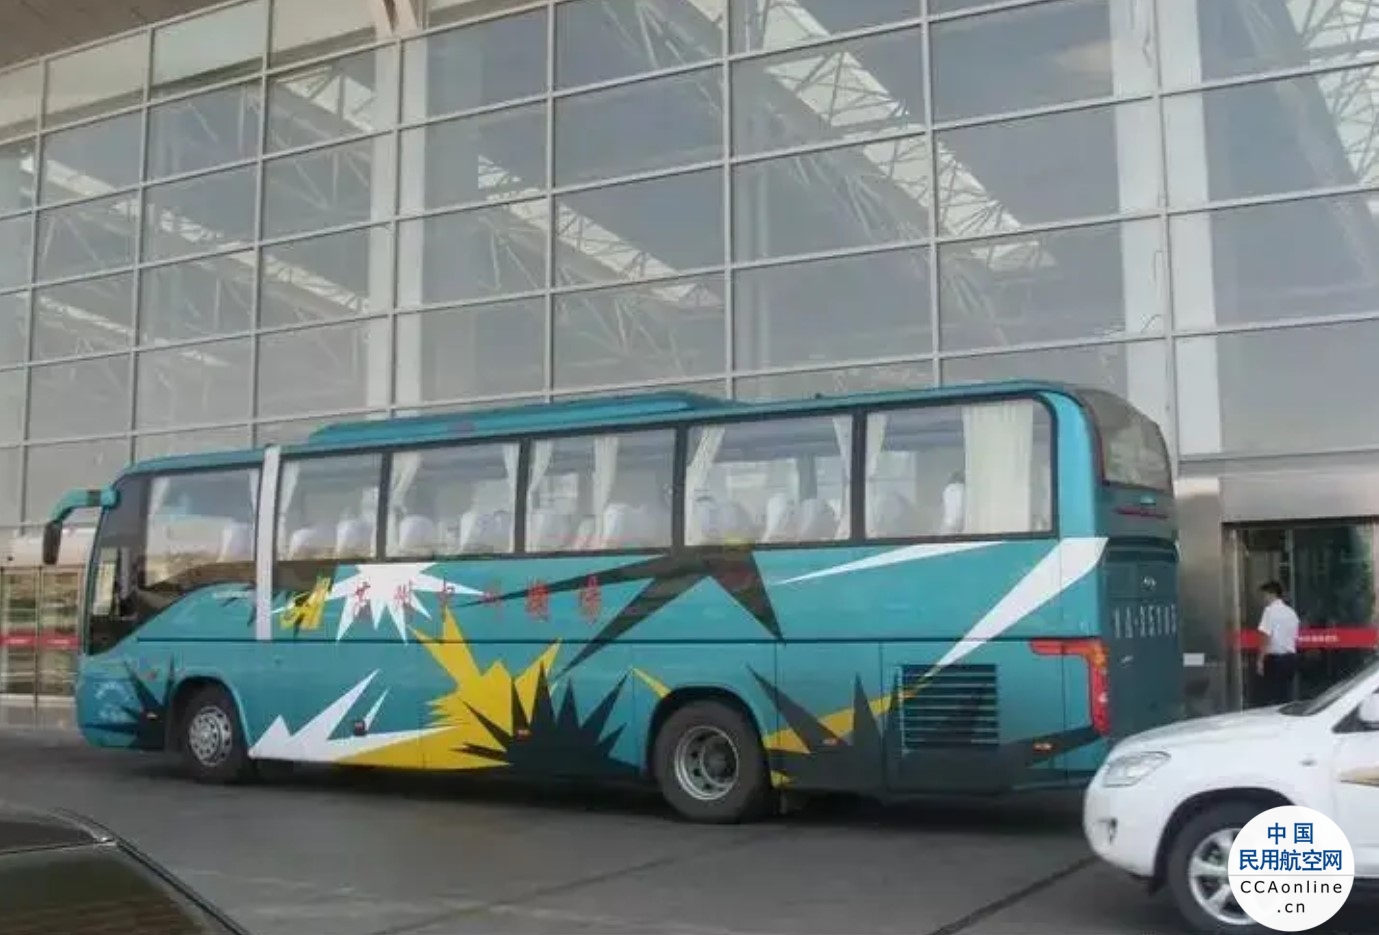 4月25日起甘肃民航巴士3号线往返线路恢复运行